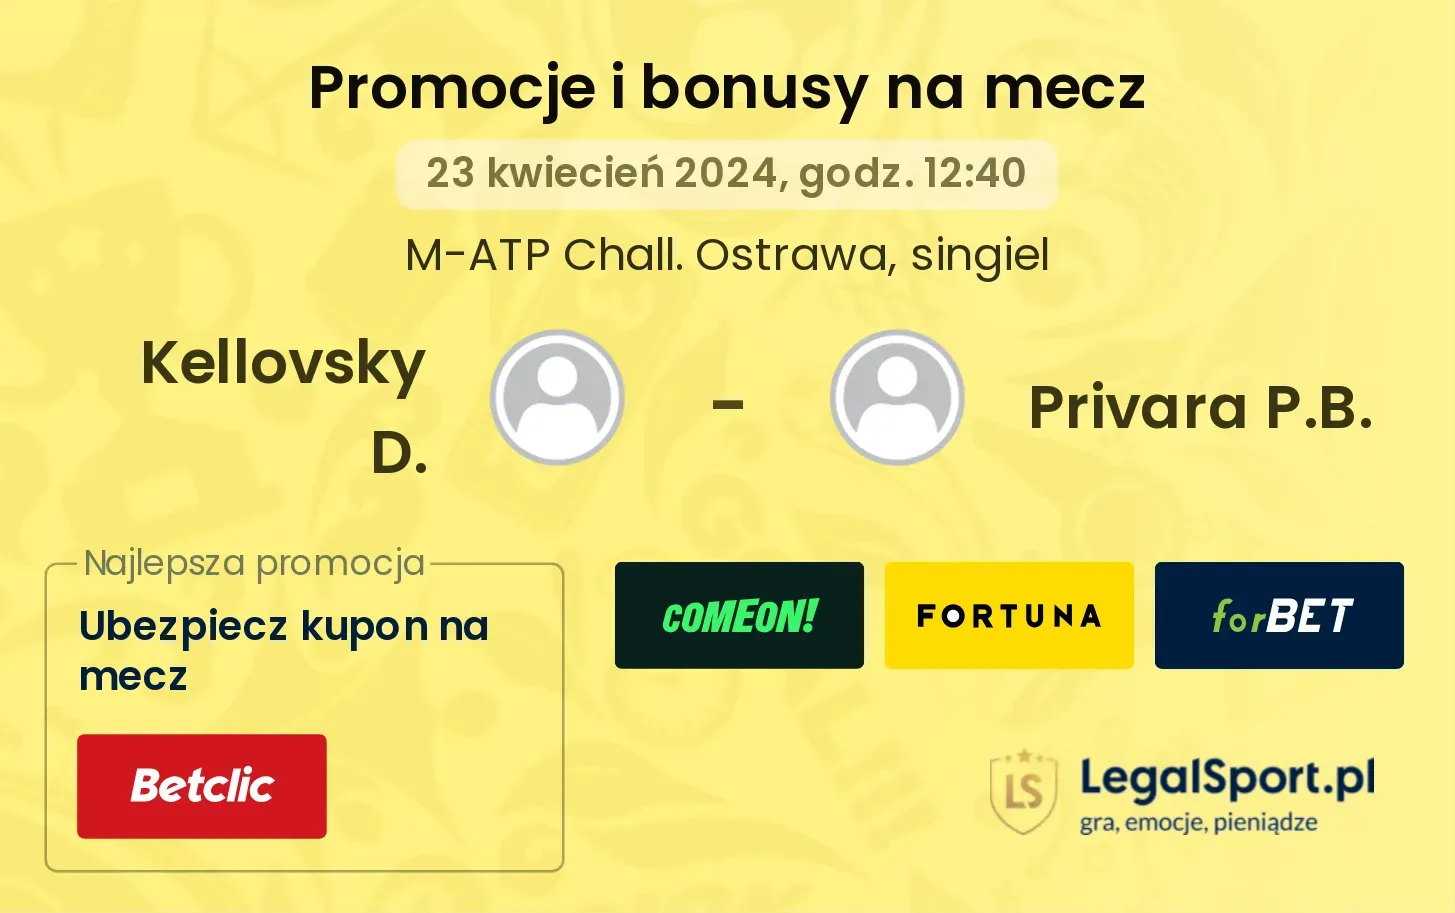 Kellovsky D. - Privara P.B. promocje bonusy na mecz